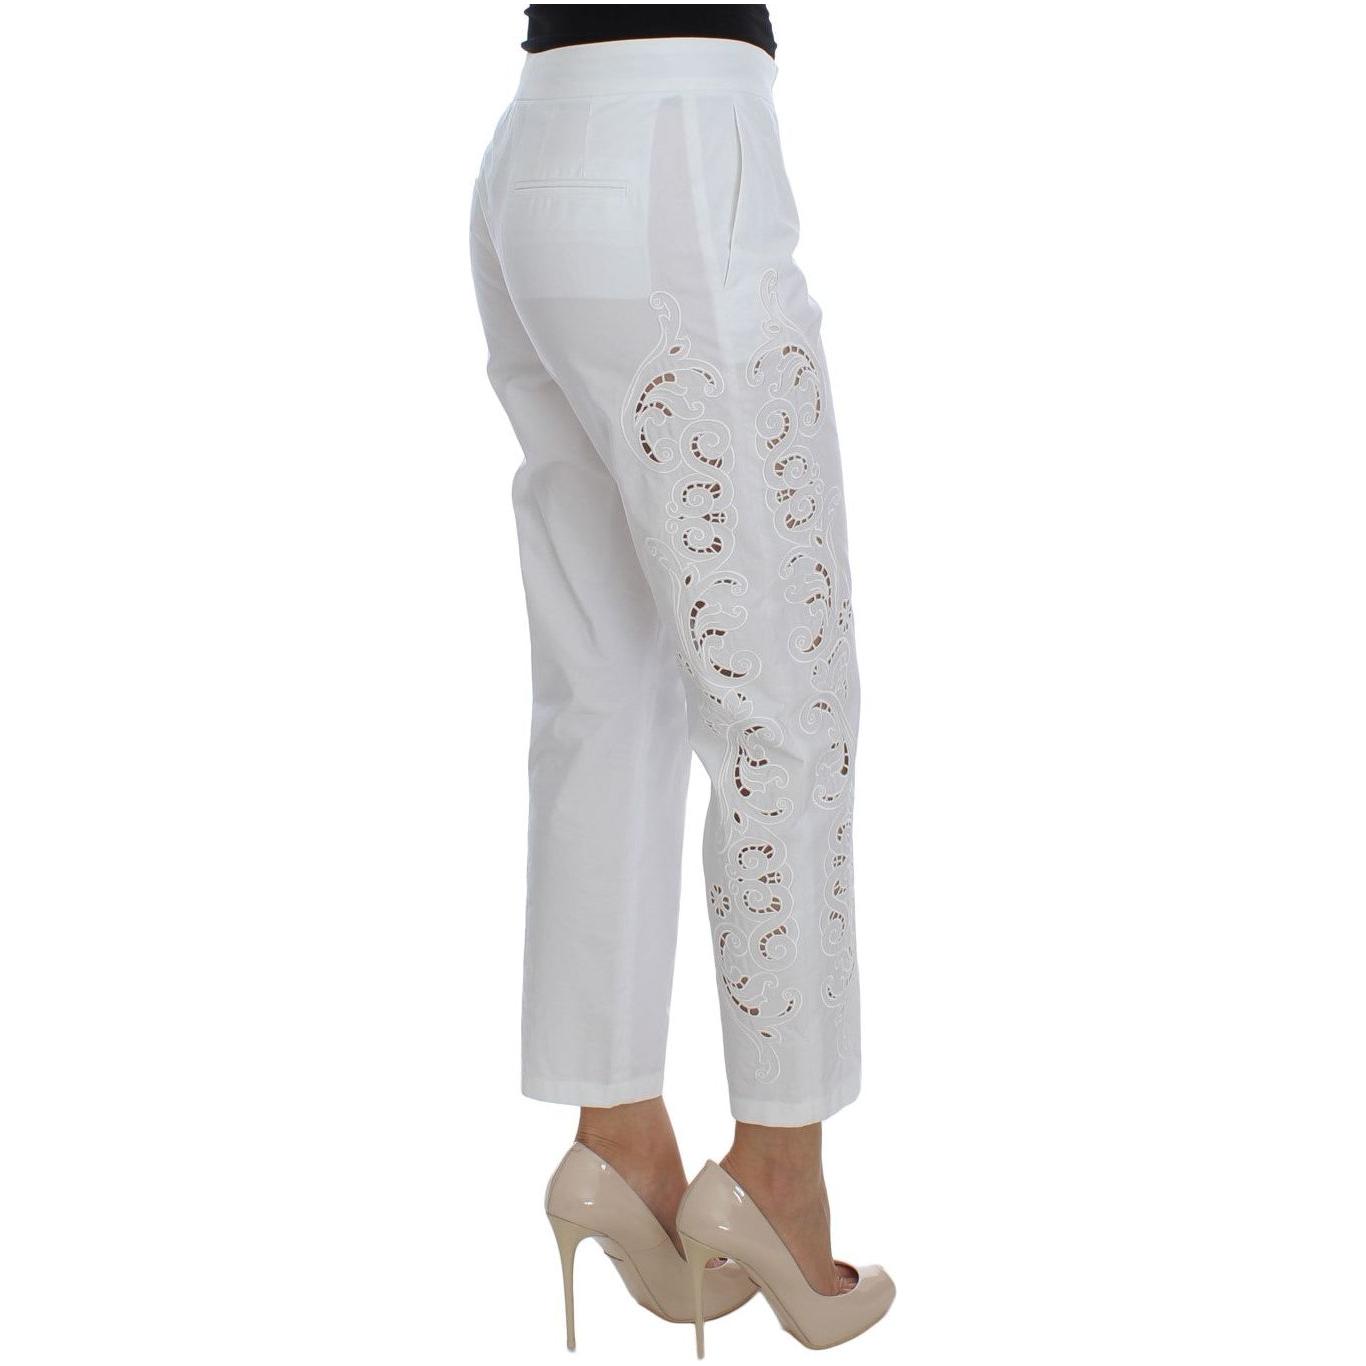 Dolce & Gabbana Elegant White Floral Cutout Dress Pants white-floral-cutout-dress-sicily-pants